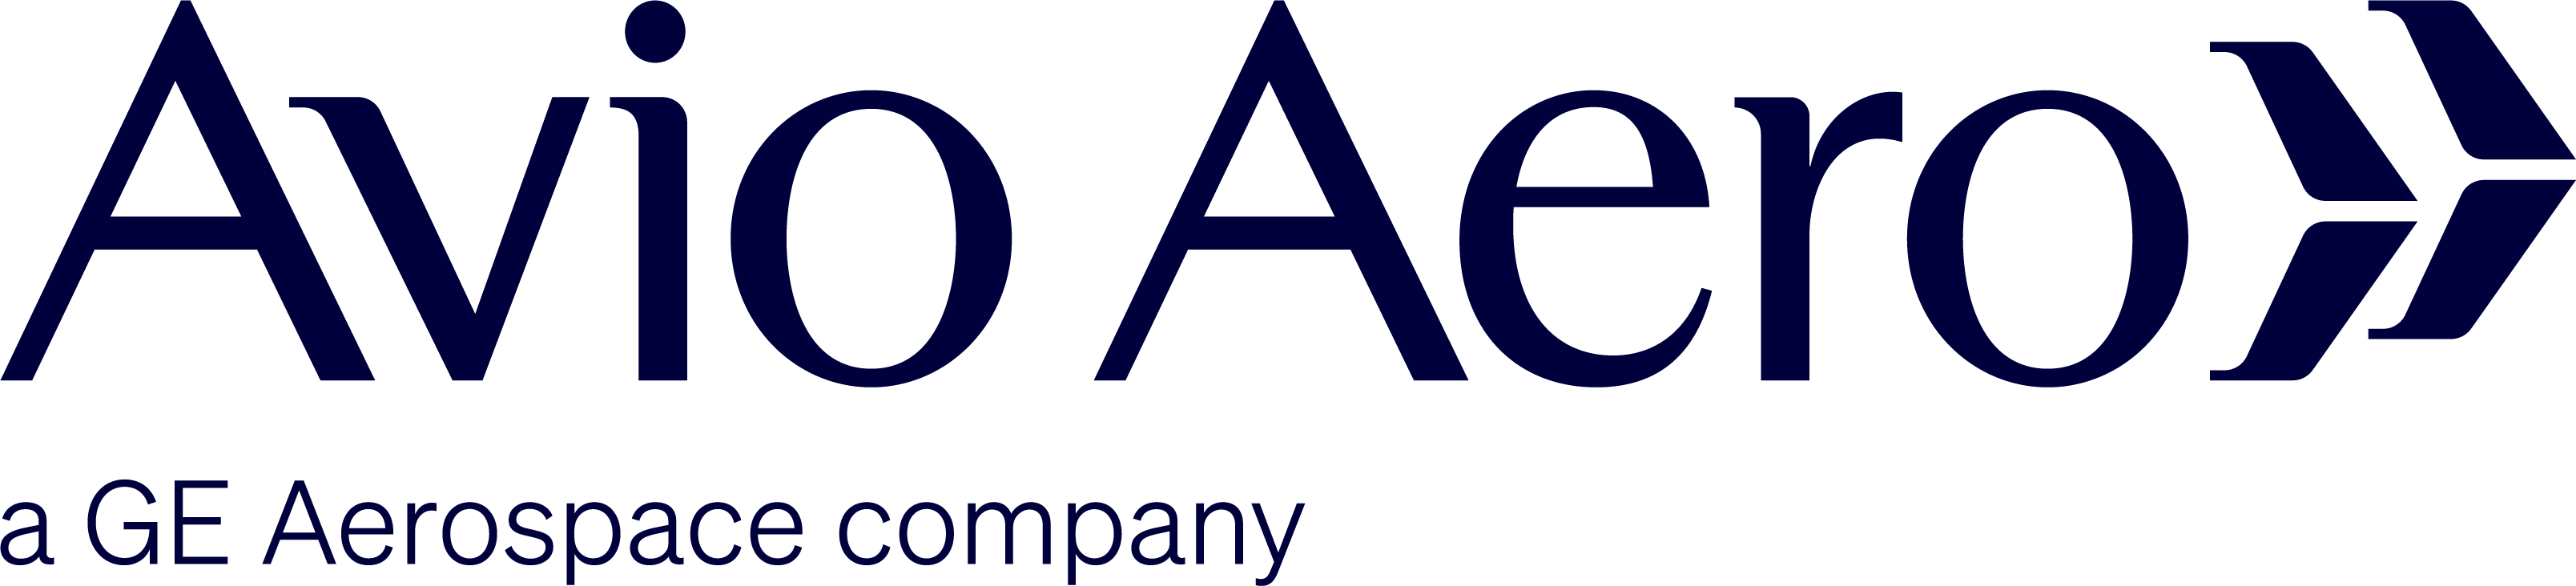 Ge Avio Aero srl logo